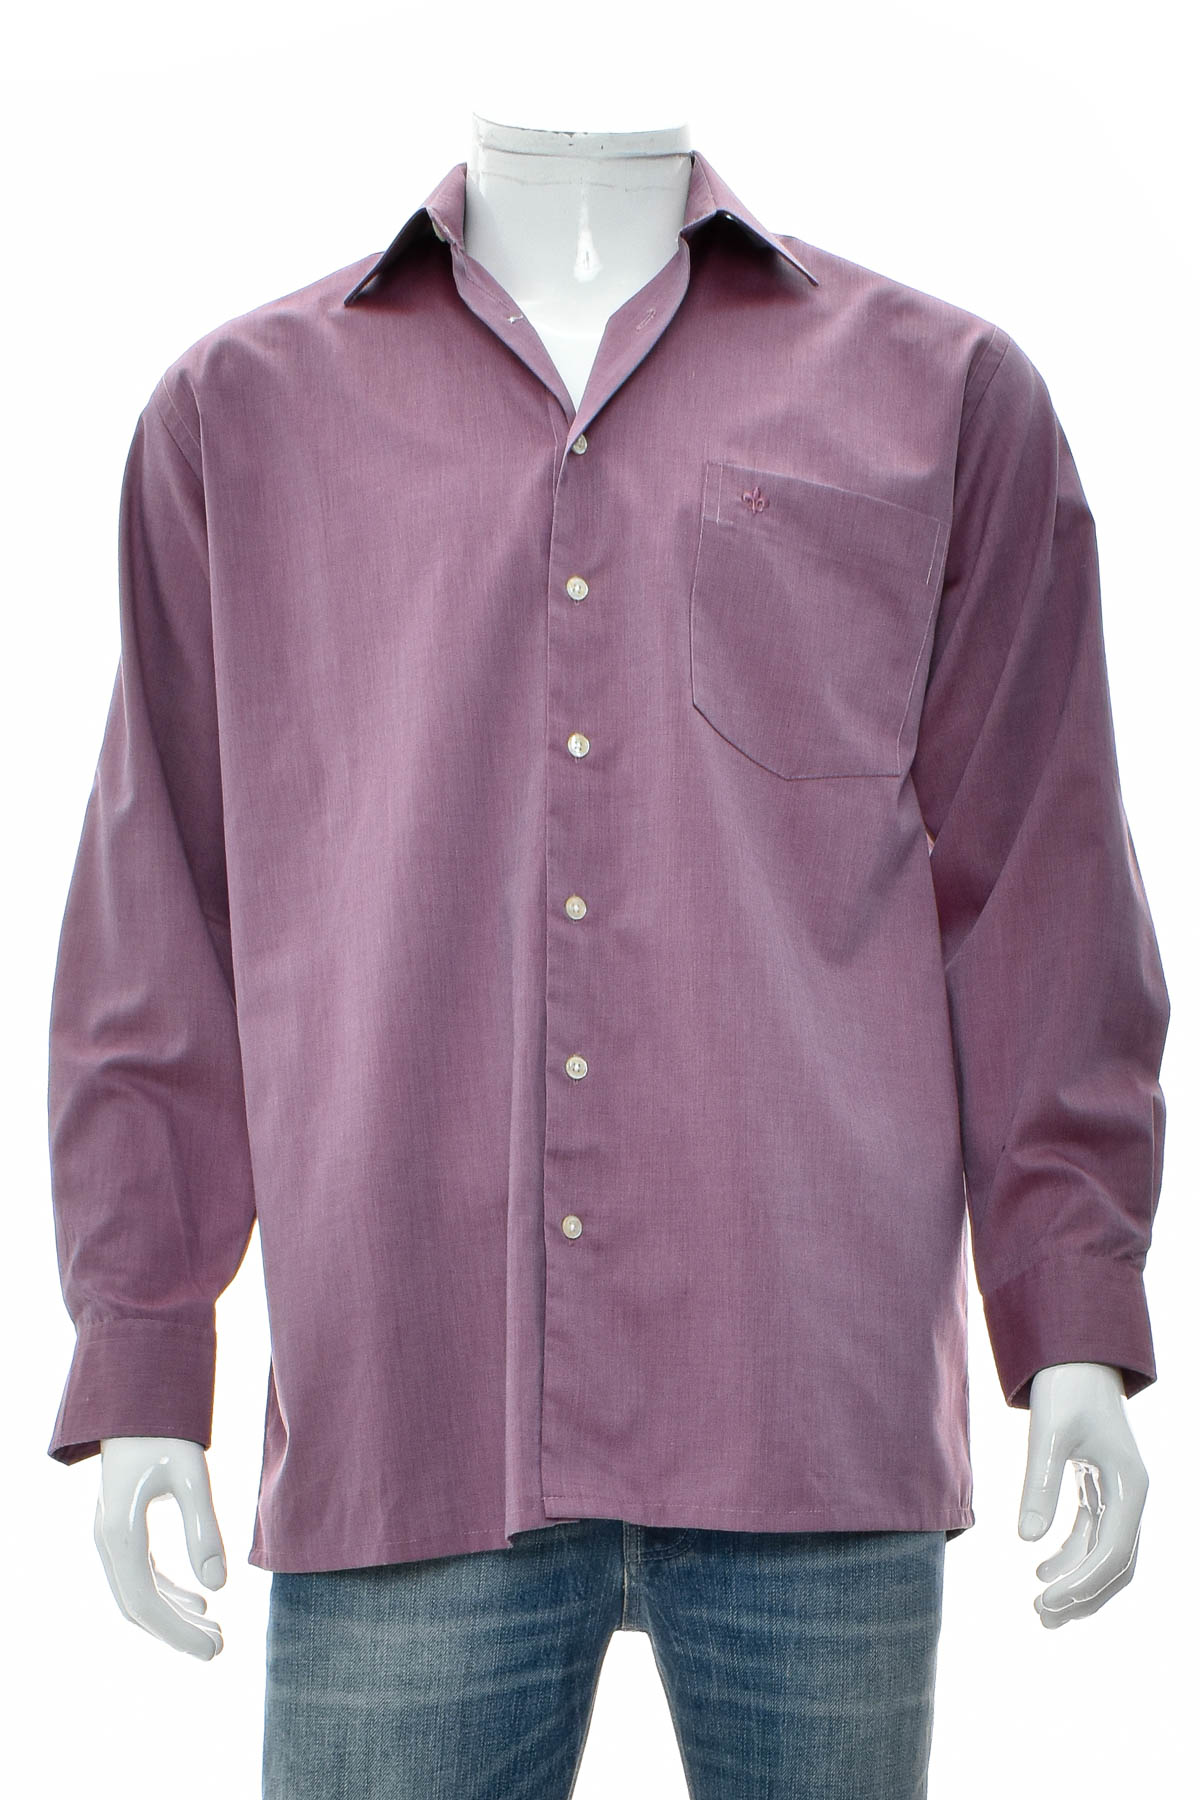 Ανδρικό πουκάμισο - Caprino - 0